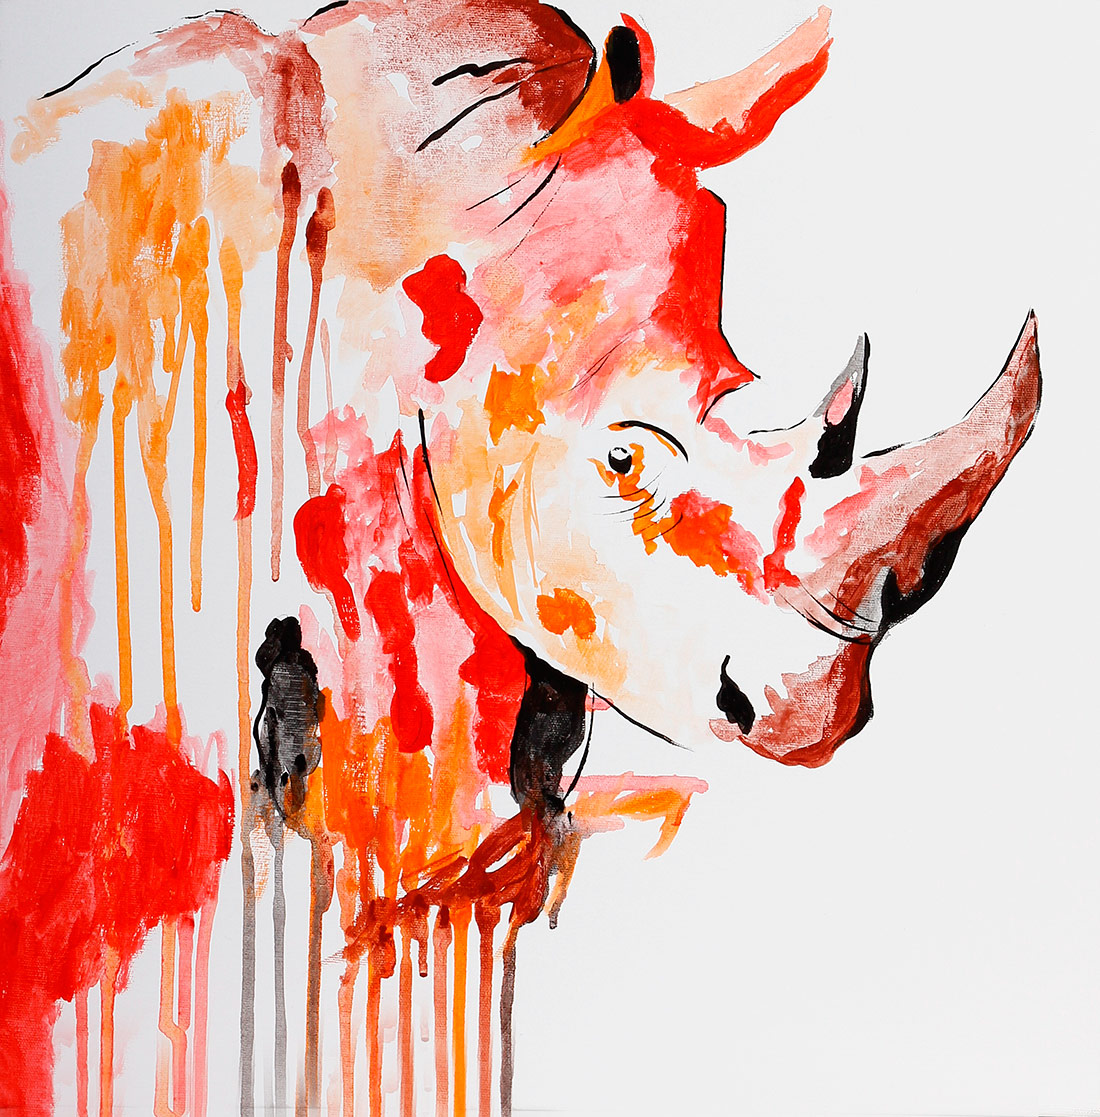 A arte é a expressão da alma, e o quadro de Rinoceronte é um exemplo disso a força e o poder da vida estão presentes em cada detalhe!